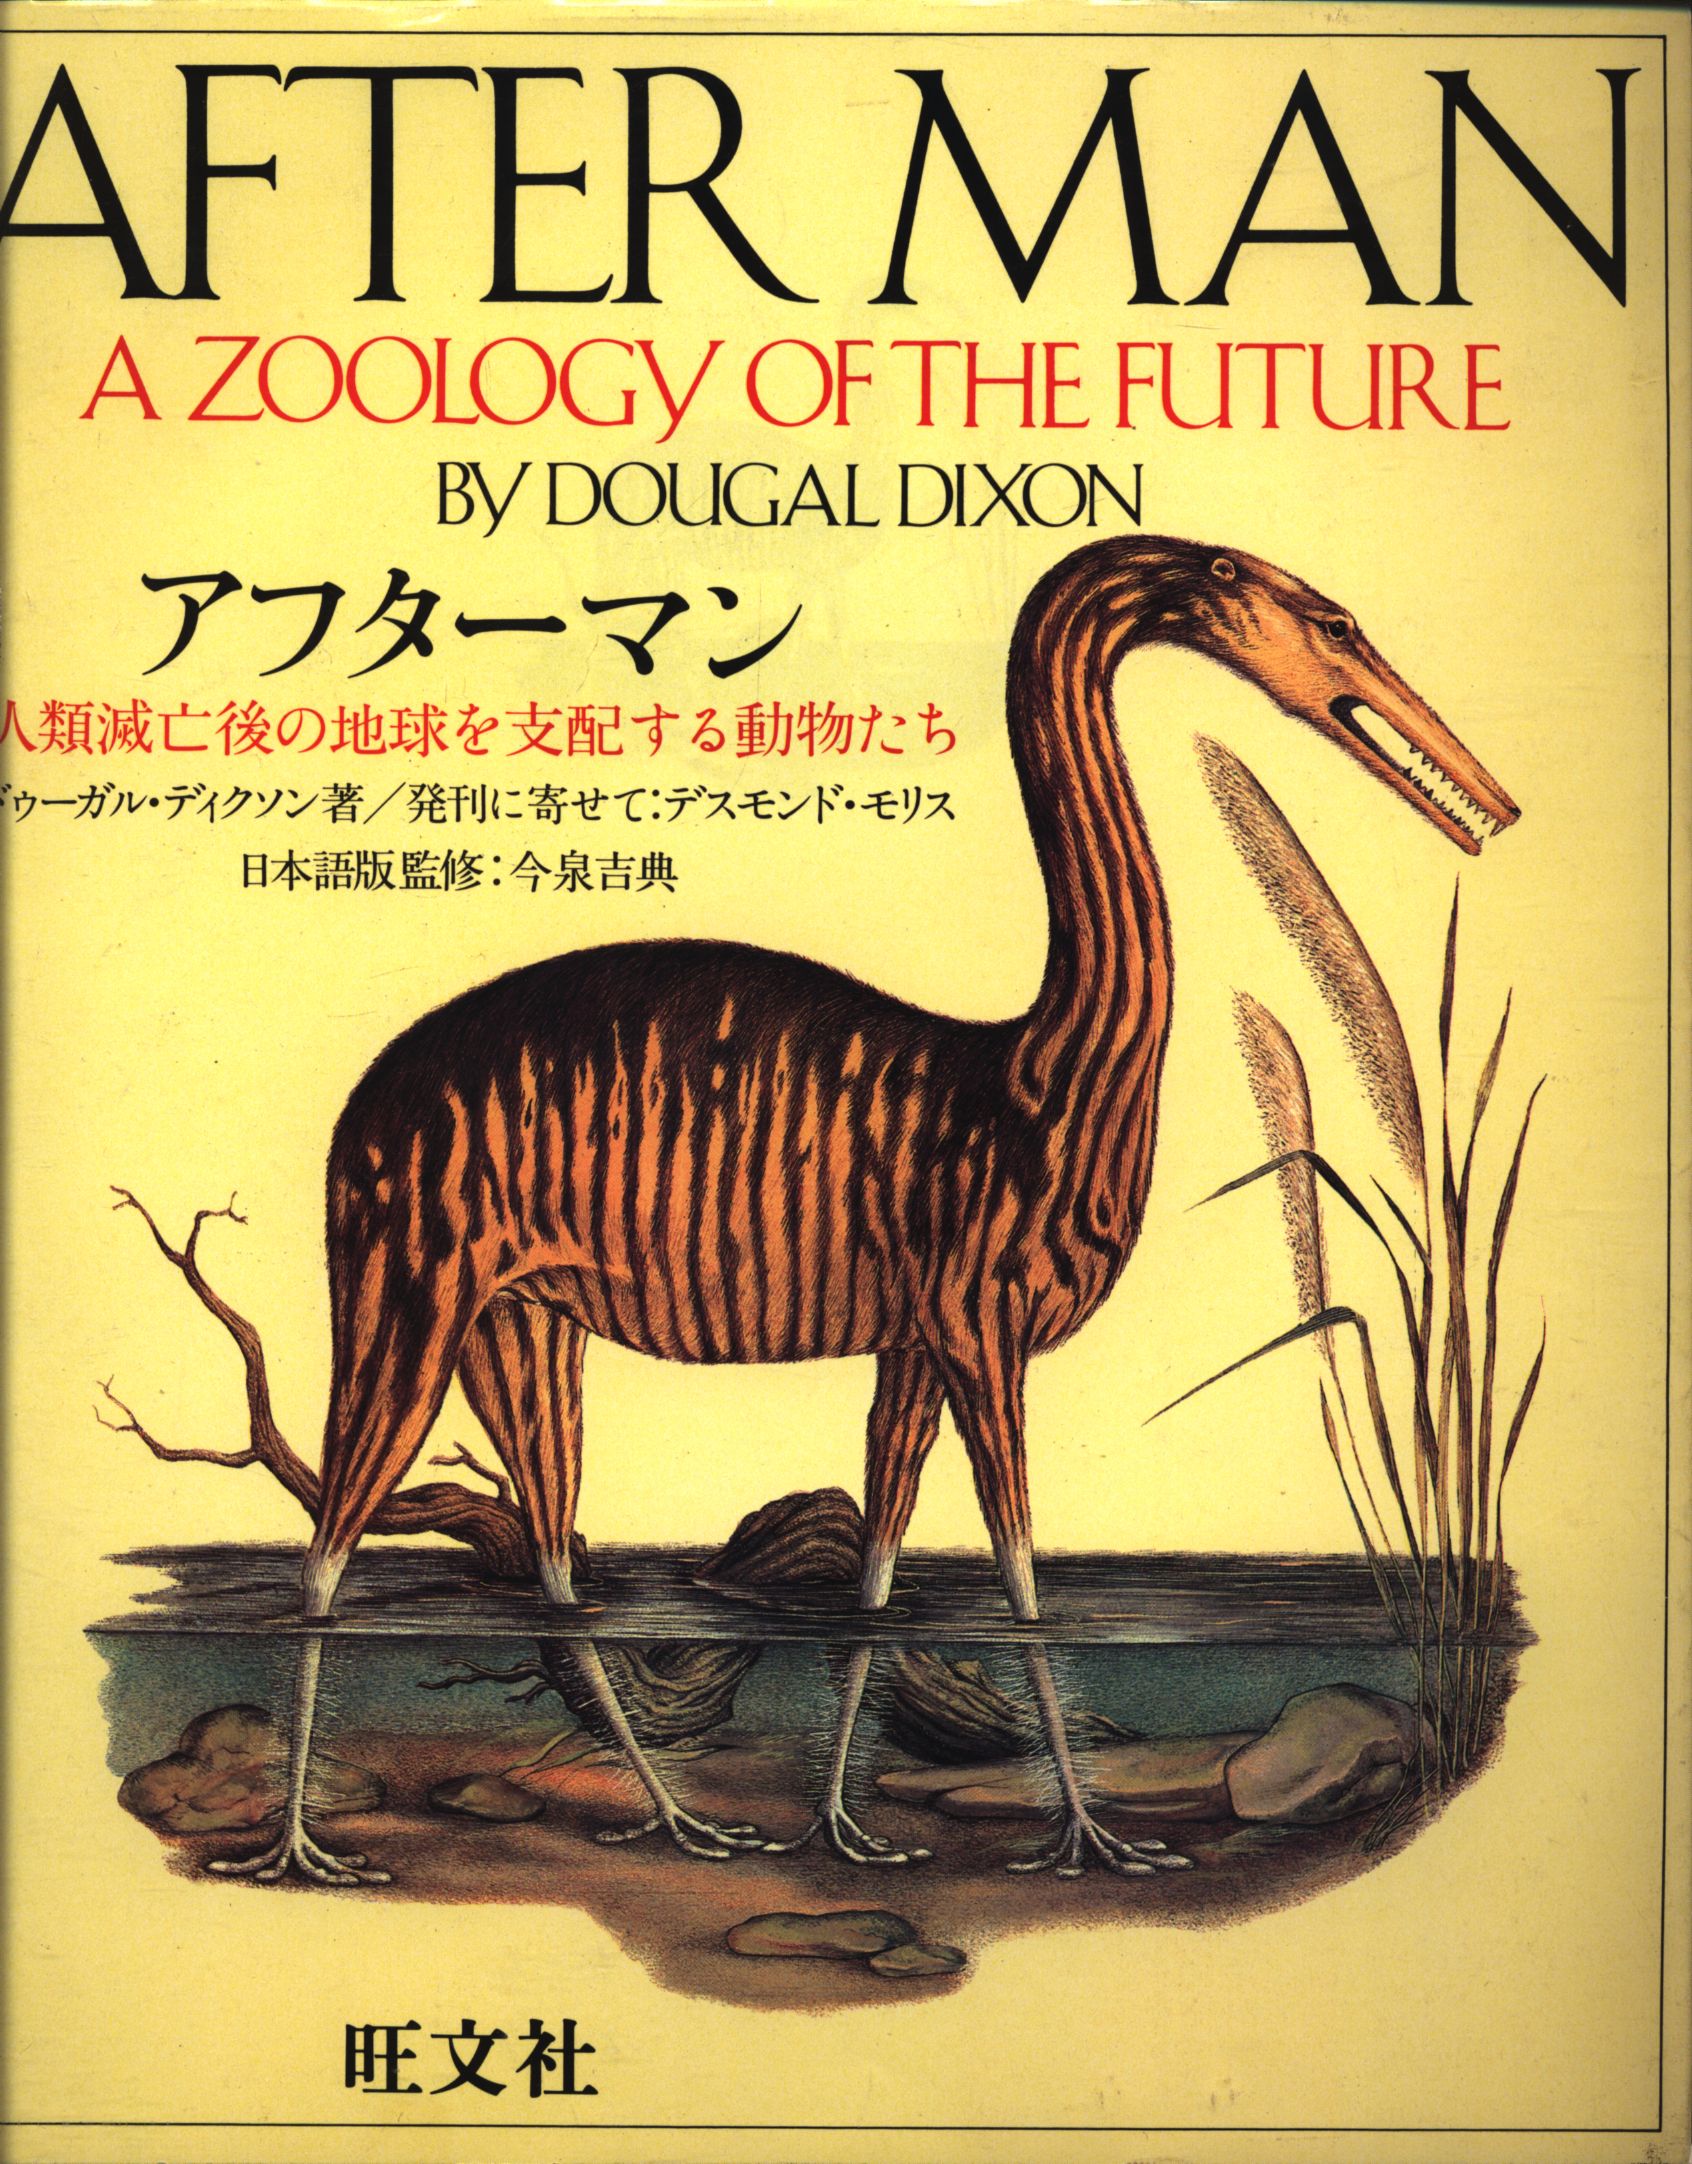 ドゥーガル アフターマン 人類滅亡後の動物の図鑑 児童書版 などはない